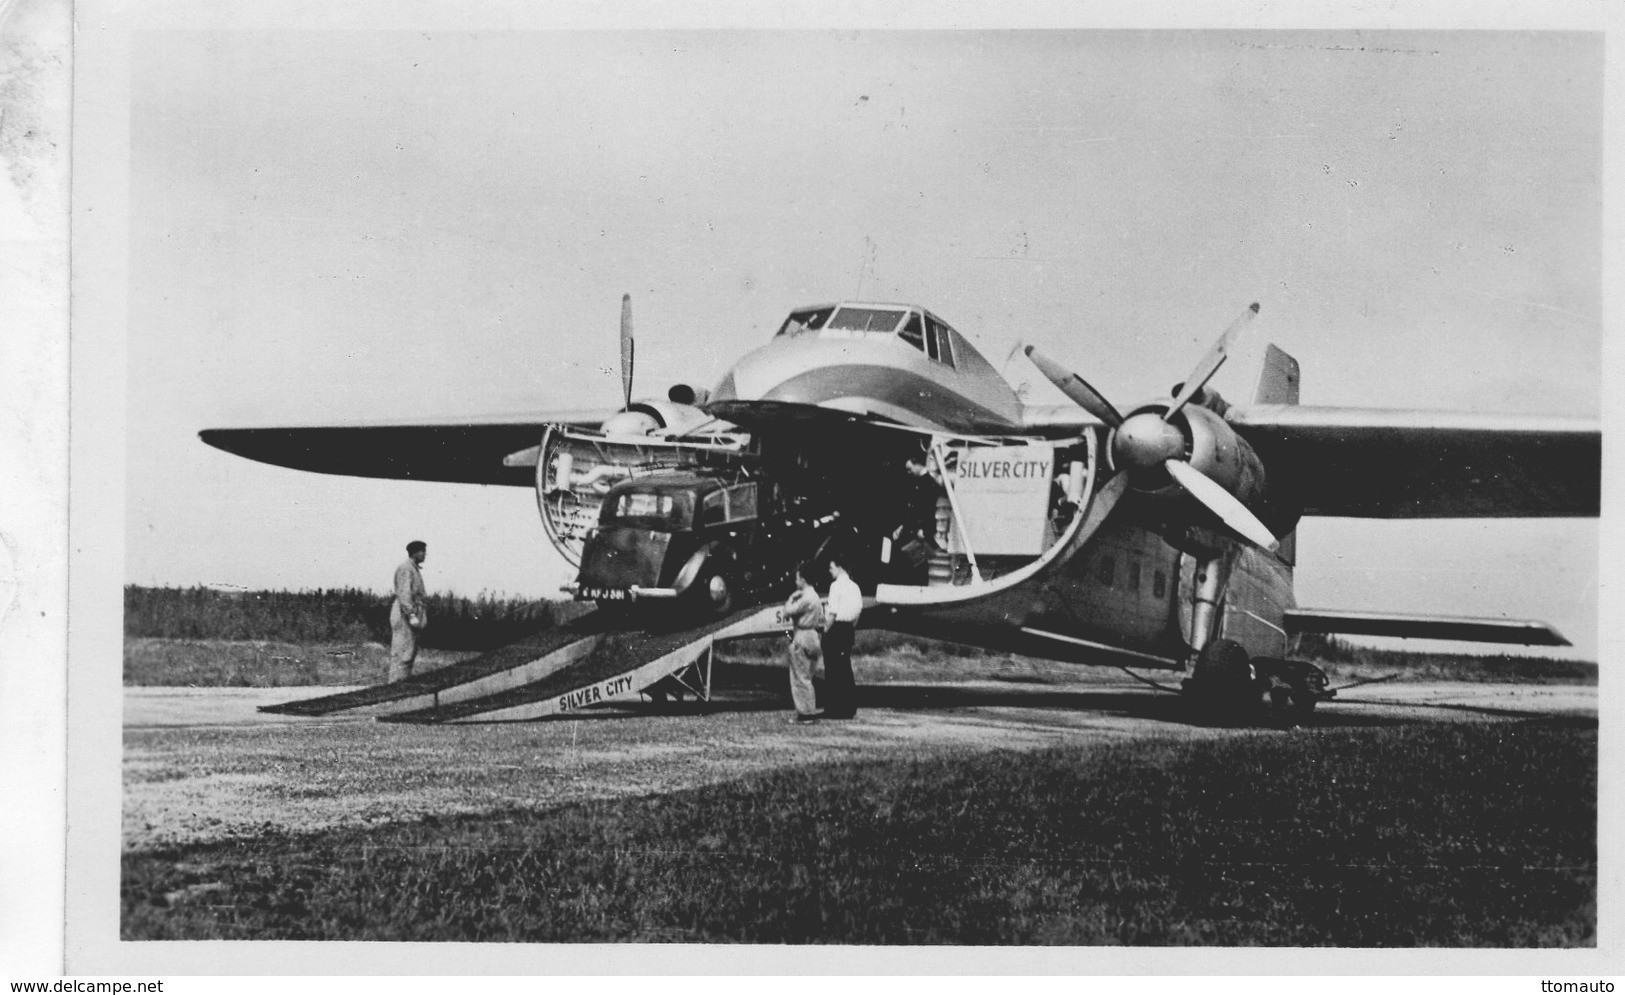 Triumph Renown Entrée Un Bristol  Freighter Silver-City Airways A Aéroport Cherbourg-Maupertus 1950s - 15x10cms PHOTO - 1946-....: Modern Era